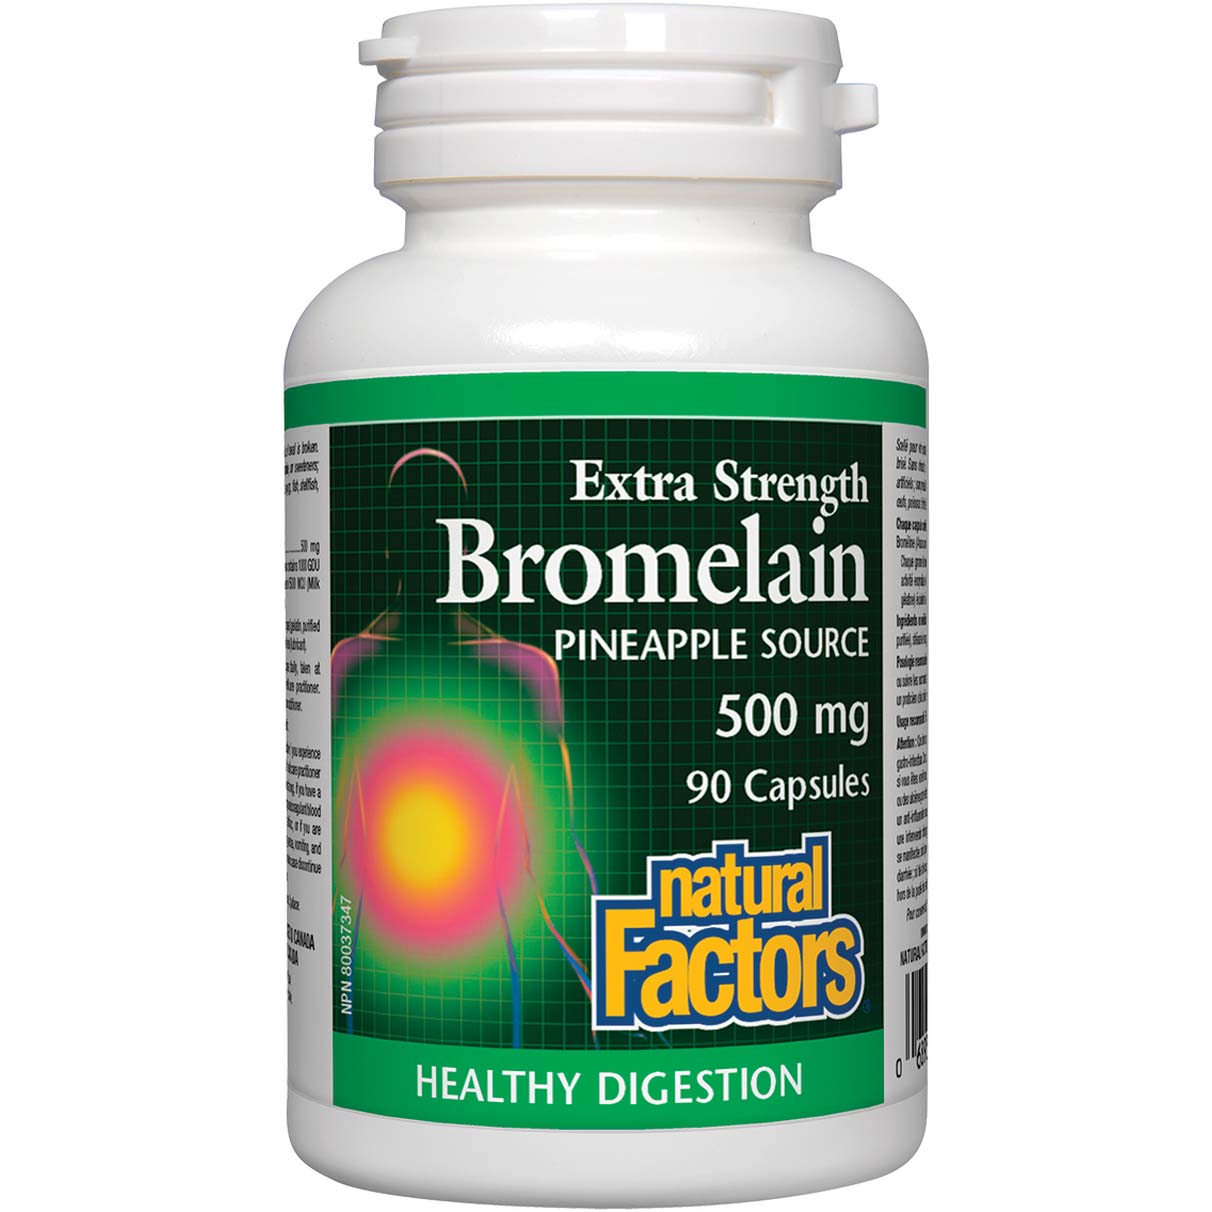 Natural Factors Bromelain 90 Capsules 500 mg